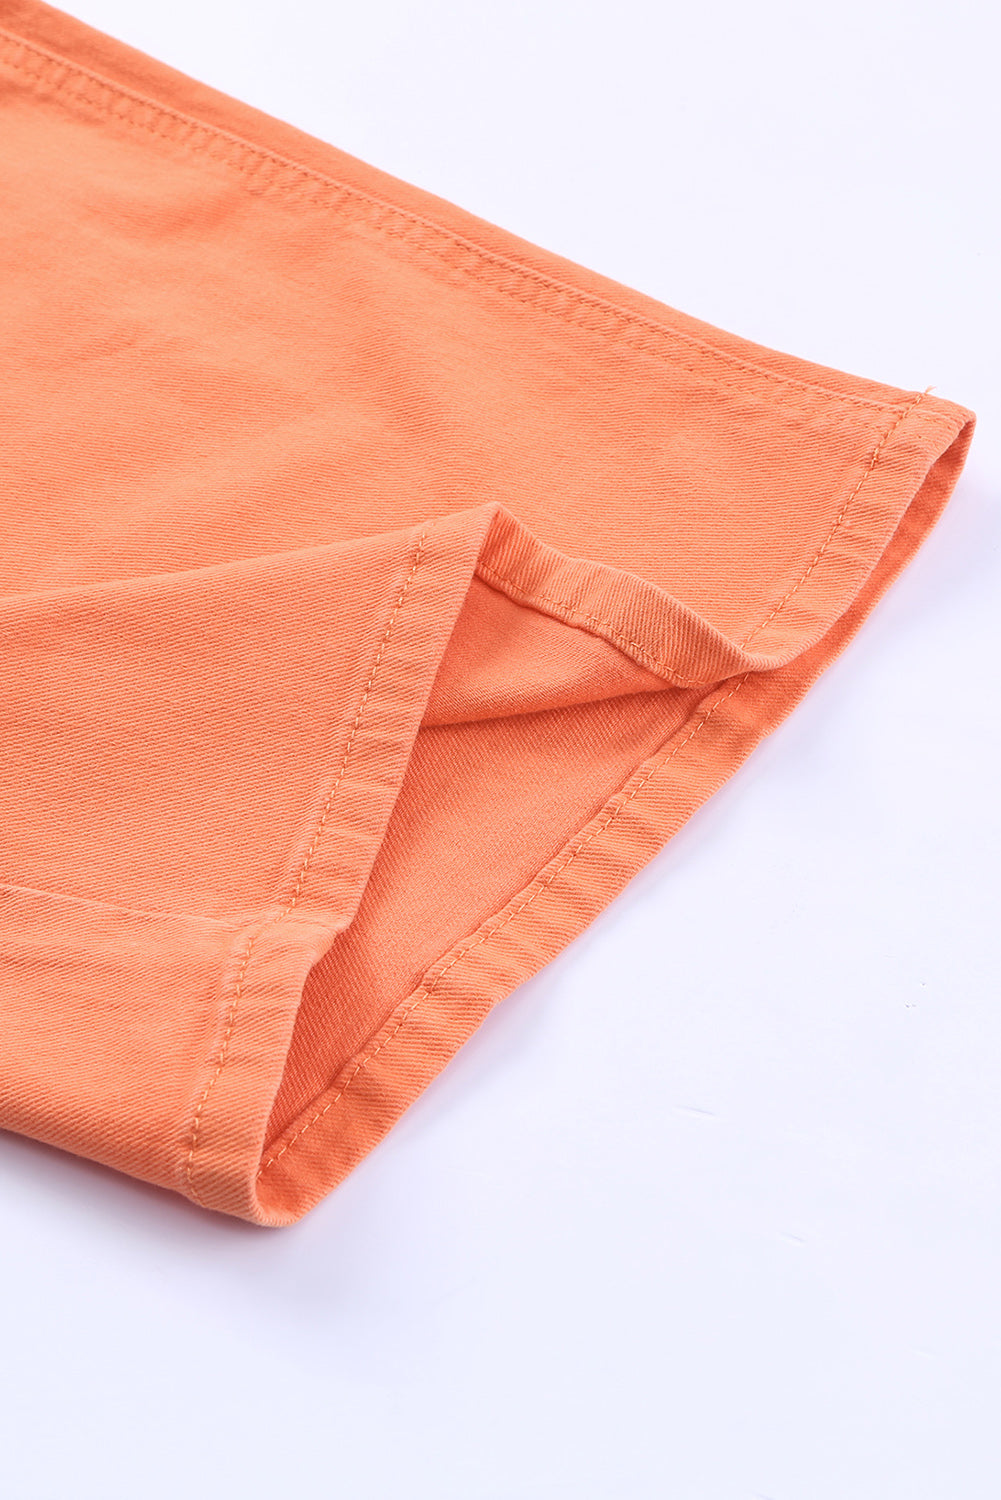 Orangefarbene Jeans mit hohem Bund und weitem Bein in Acid-Waschung